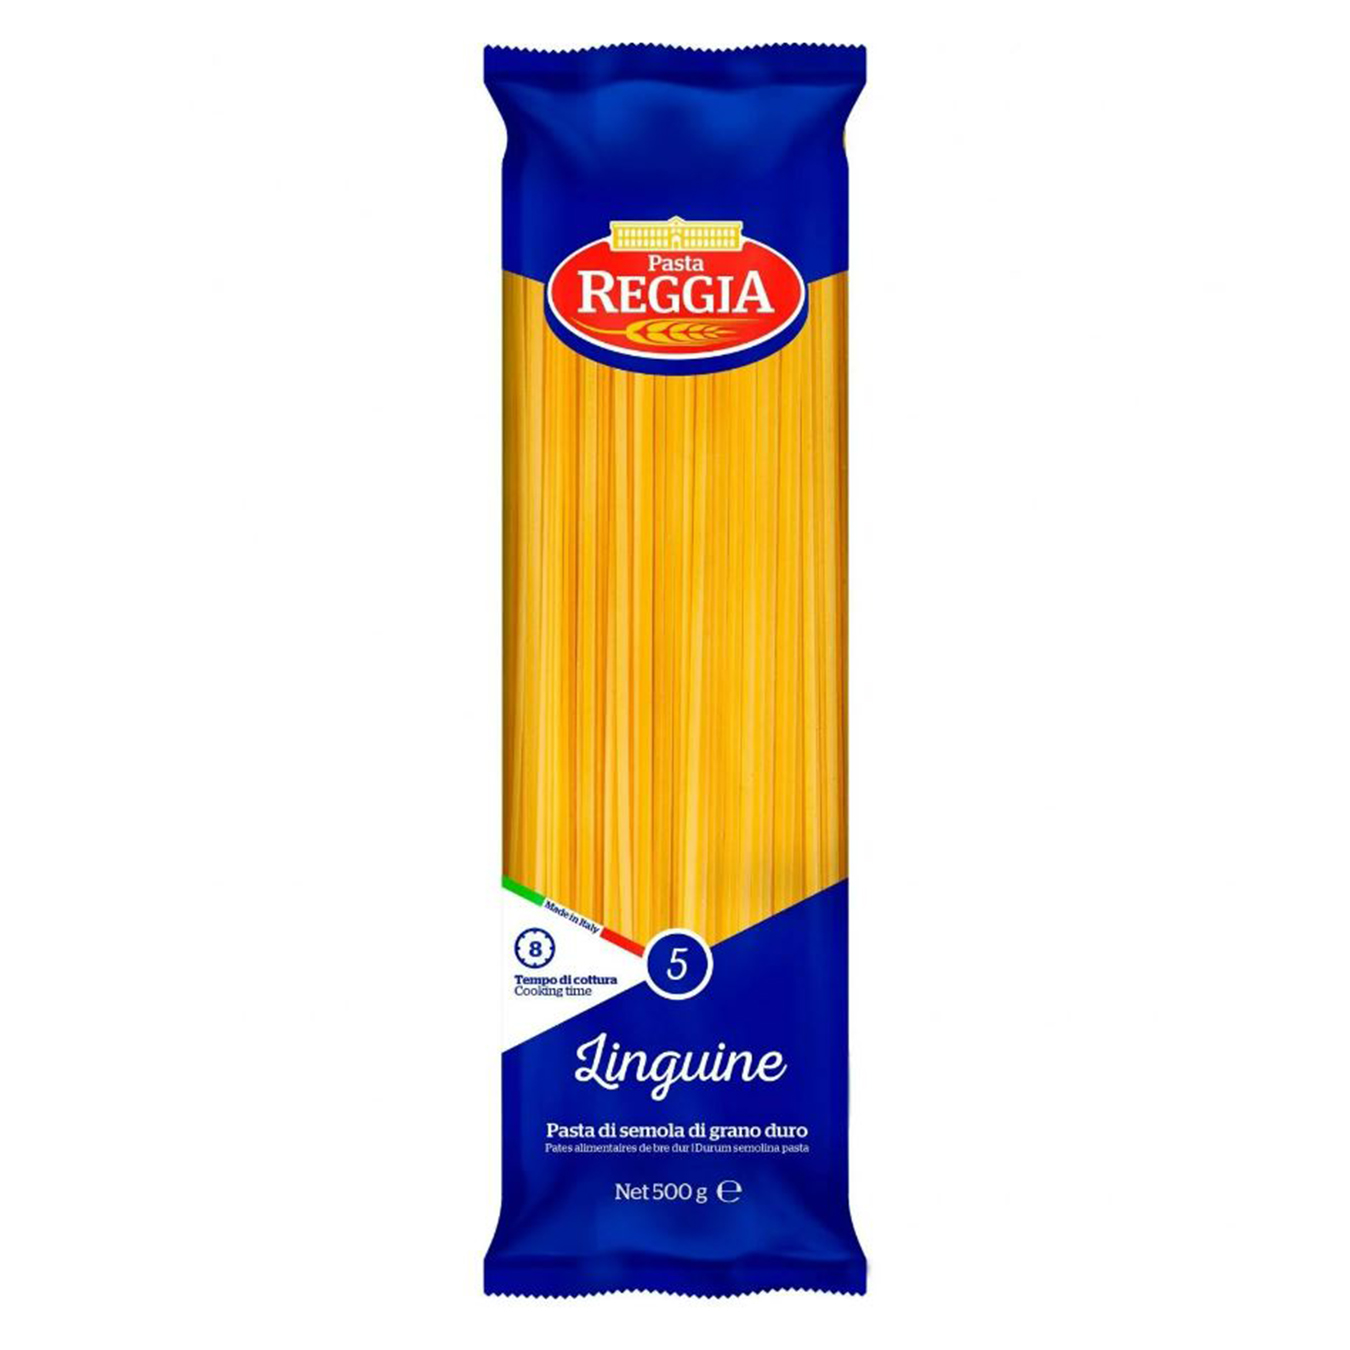 Pasta Reggia Linguine 500g